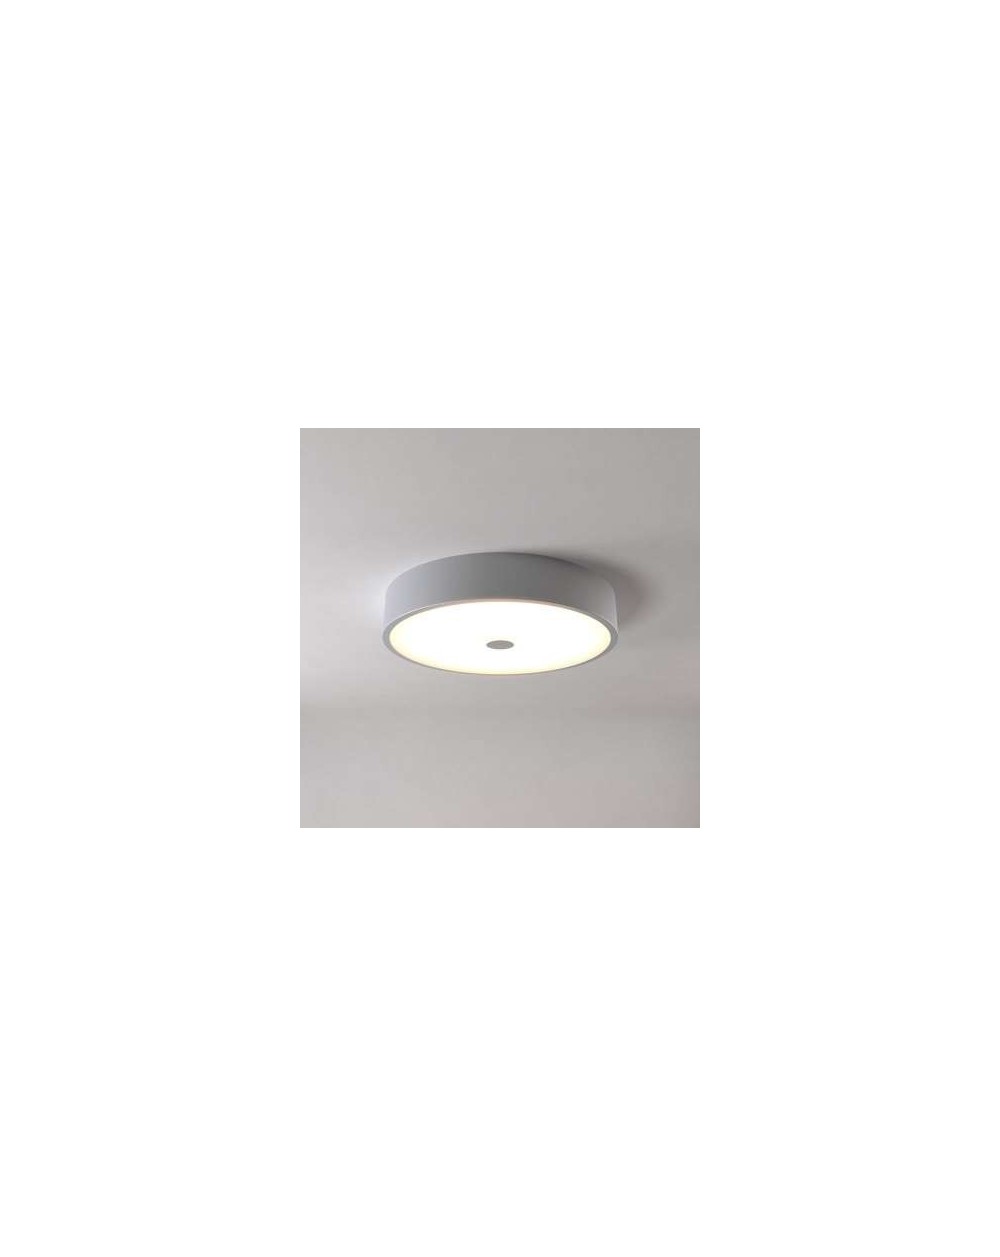 Lampa sufitowa ALAN 300 plafon - Cleoni okrągła oprawa metalowa